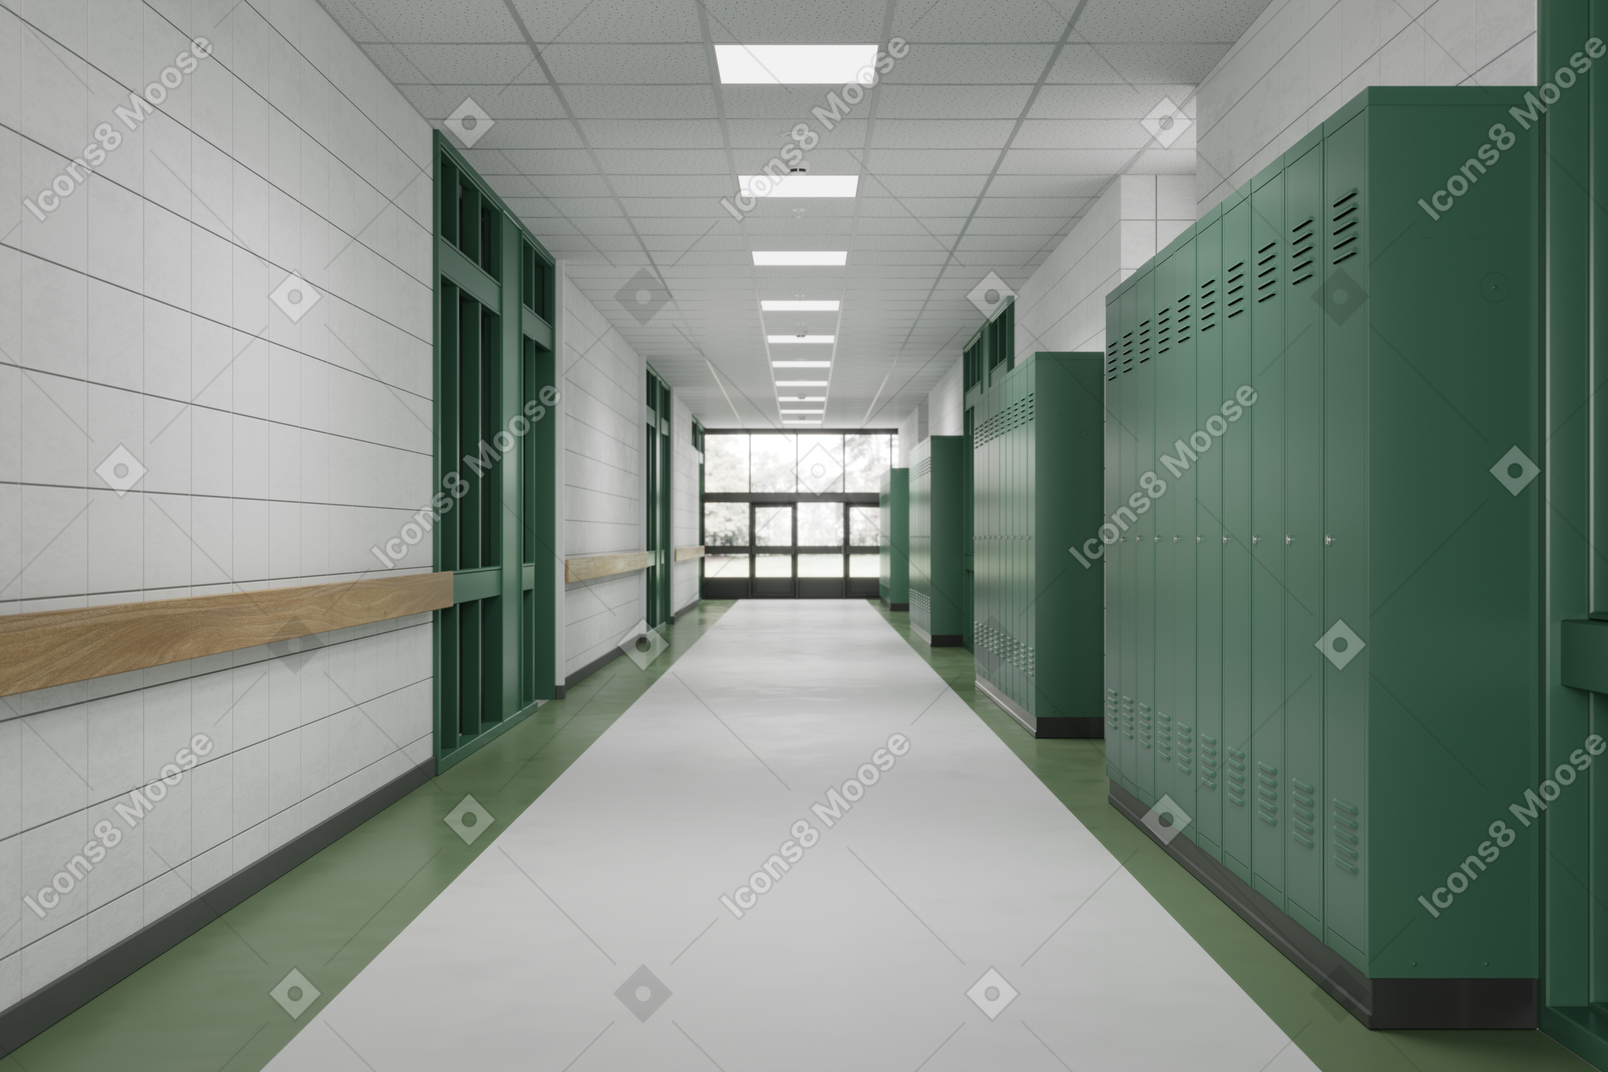 Corridoio della scuola con armadietti